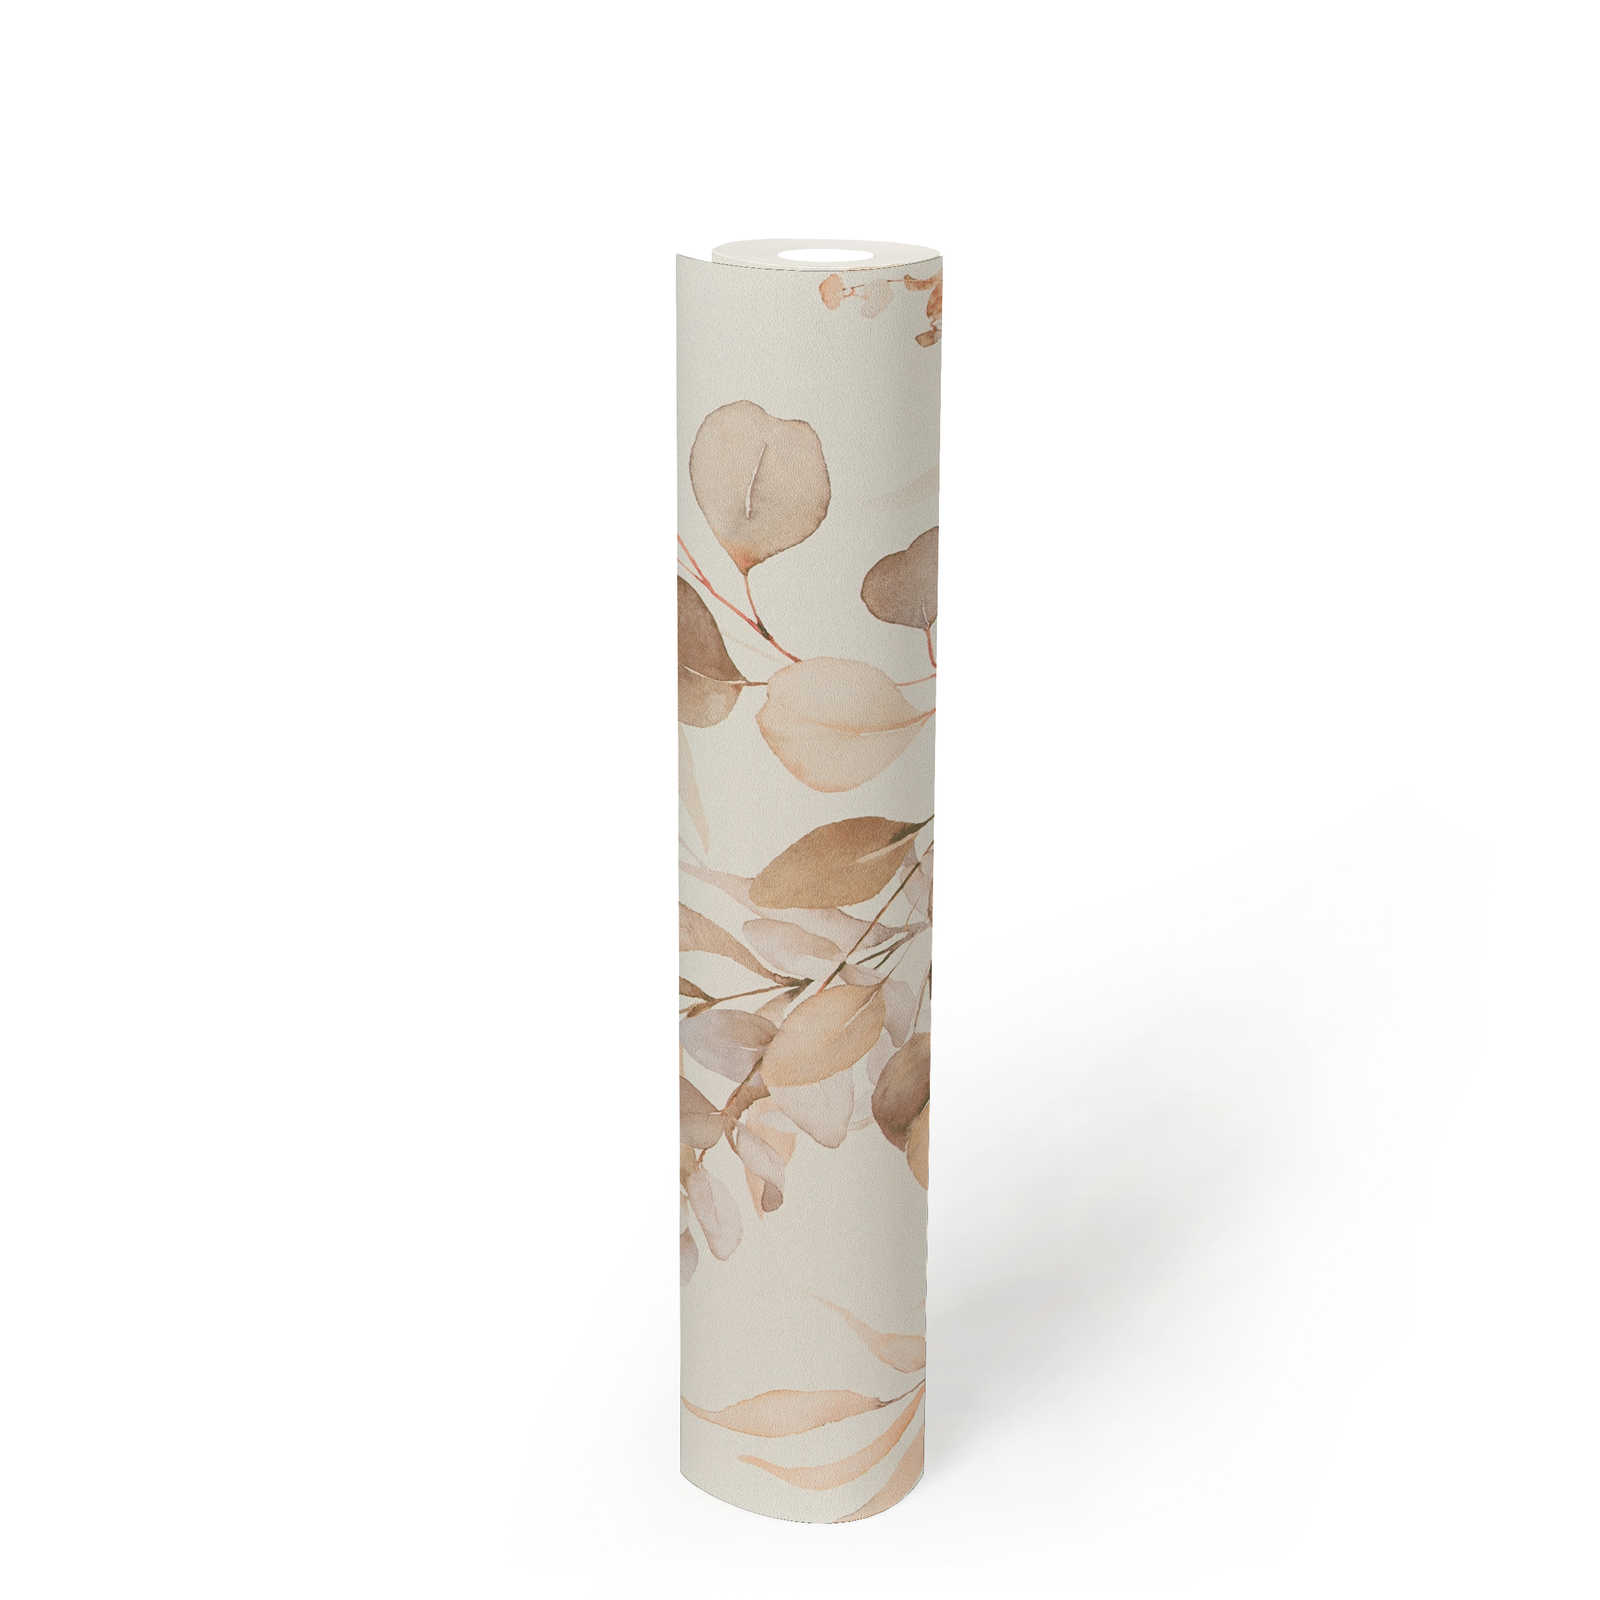             Papier peint intissé avec motif de feuilles aquarelles dans des tons chauds - crème, beige
        